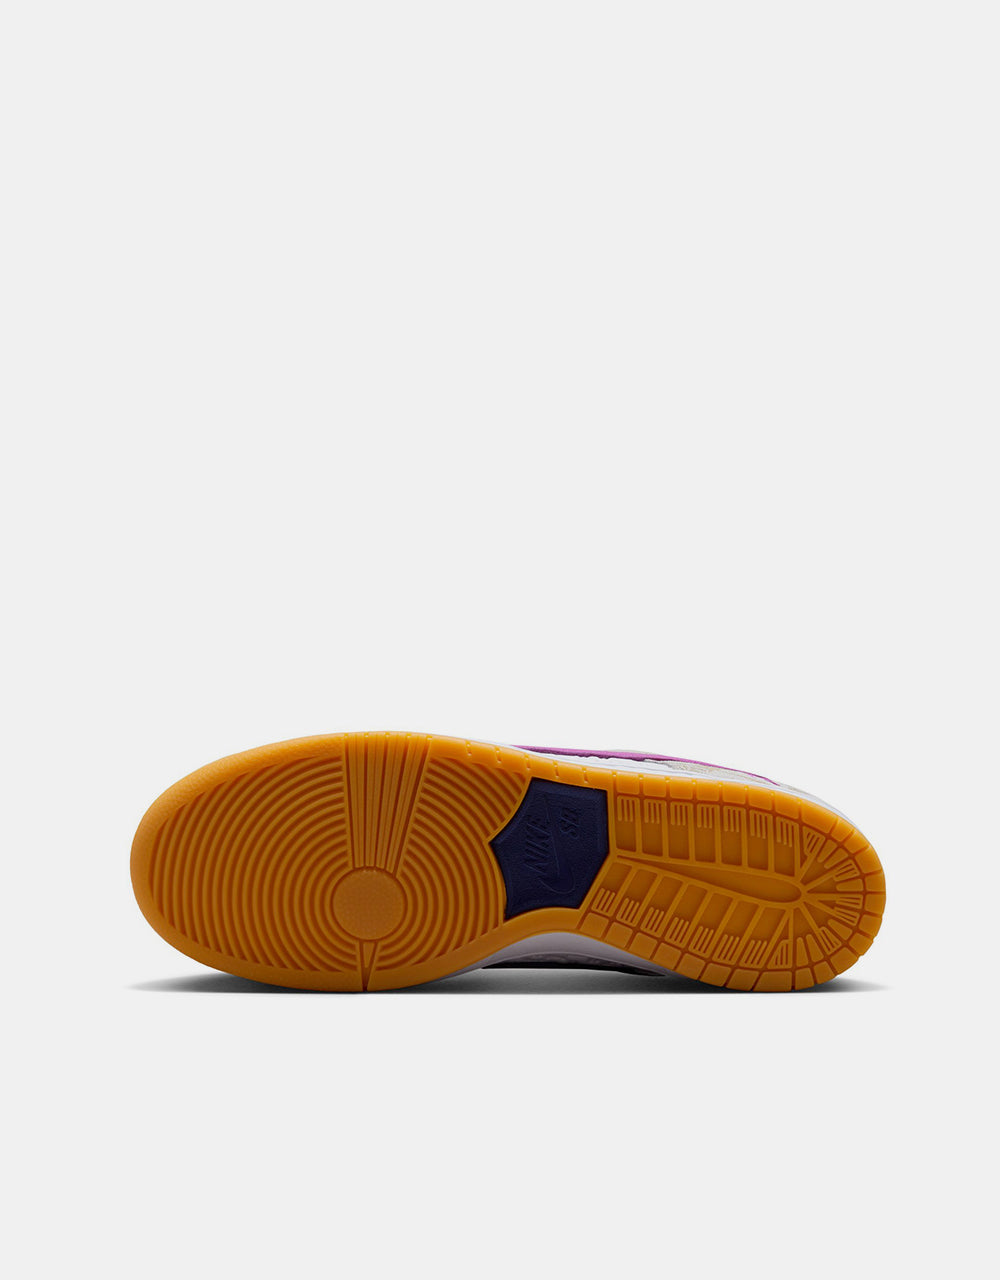 Nike SB 'Rayssa' Dunk Low Premium QS Skate Shoes - Pure Platinum/Deep Royal Blue/Vivid Purple/White/Gum Yellow